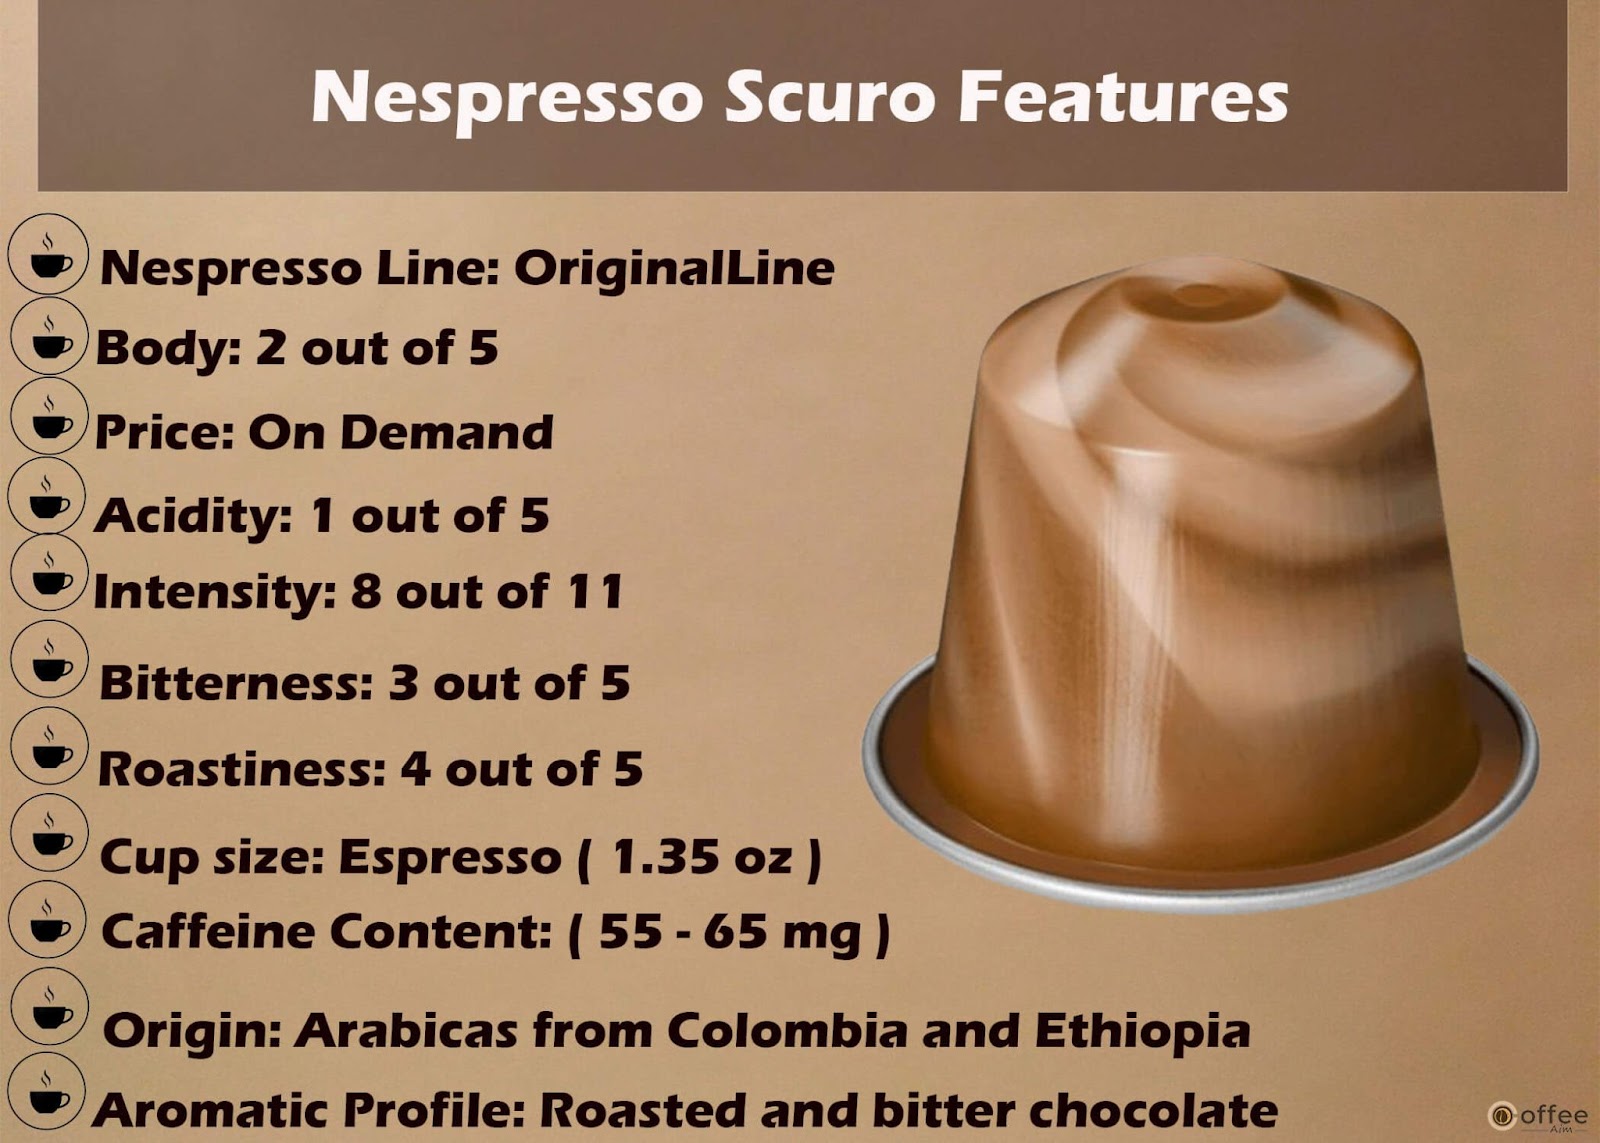 Features Chart of Nespresso Scuro Original Line Capsule.